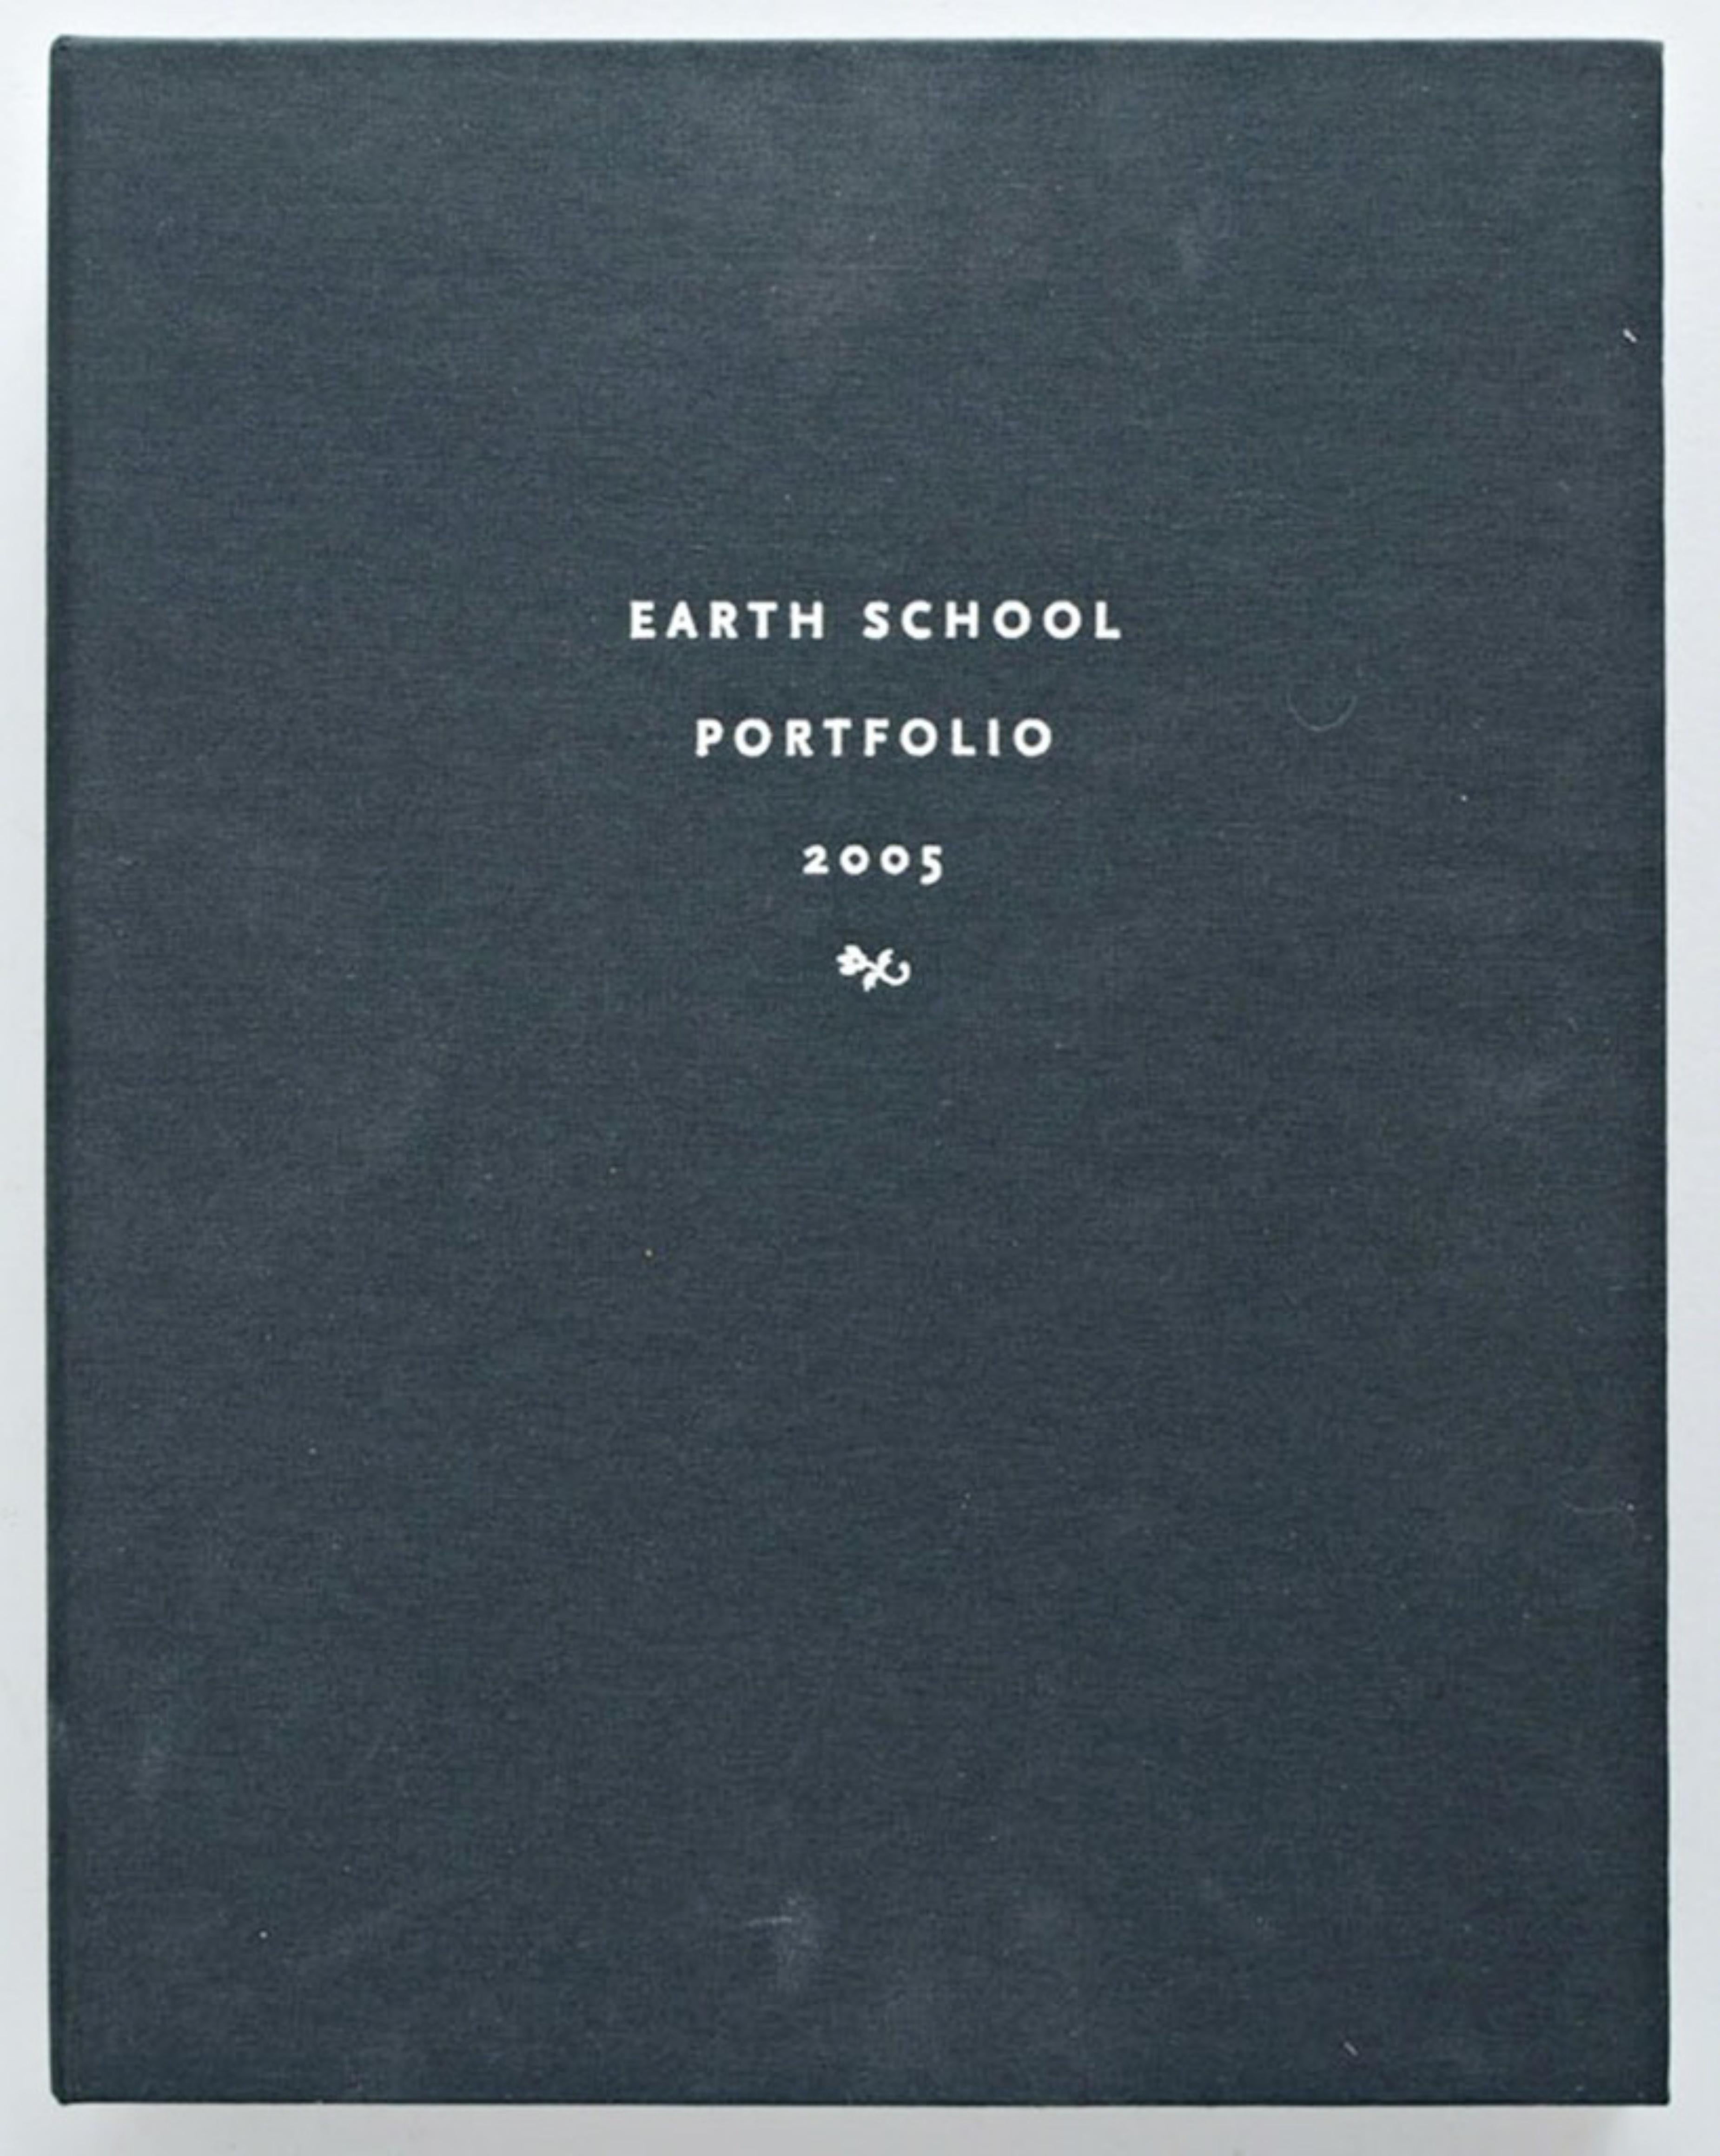 Kathy Butterly
Sans titre du portfolio de l'école de la Terre, 2005
Impression numérique sur papier cartonné
24 × 18 pouces
Signée à la main par l'artiste ; Signée et numérotée 19/25 au crayon graphite au recto.
Non encadré
Cette estampe de 2005 a